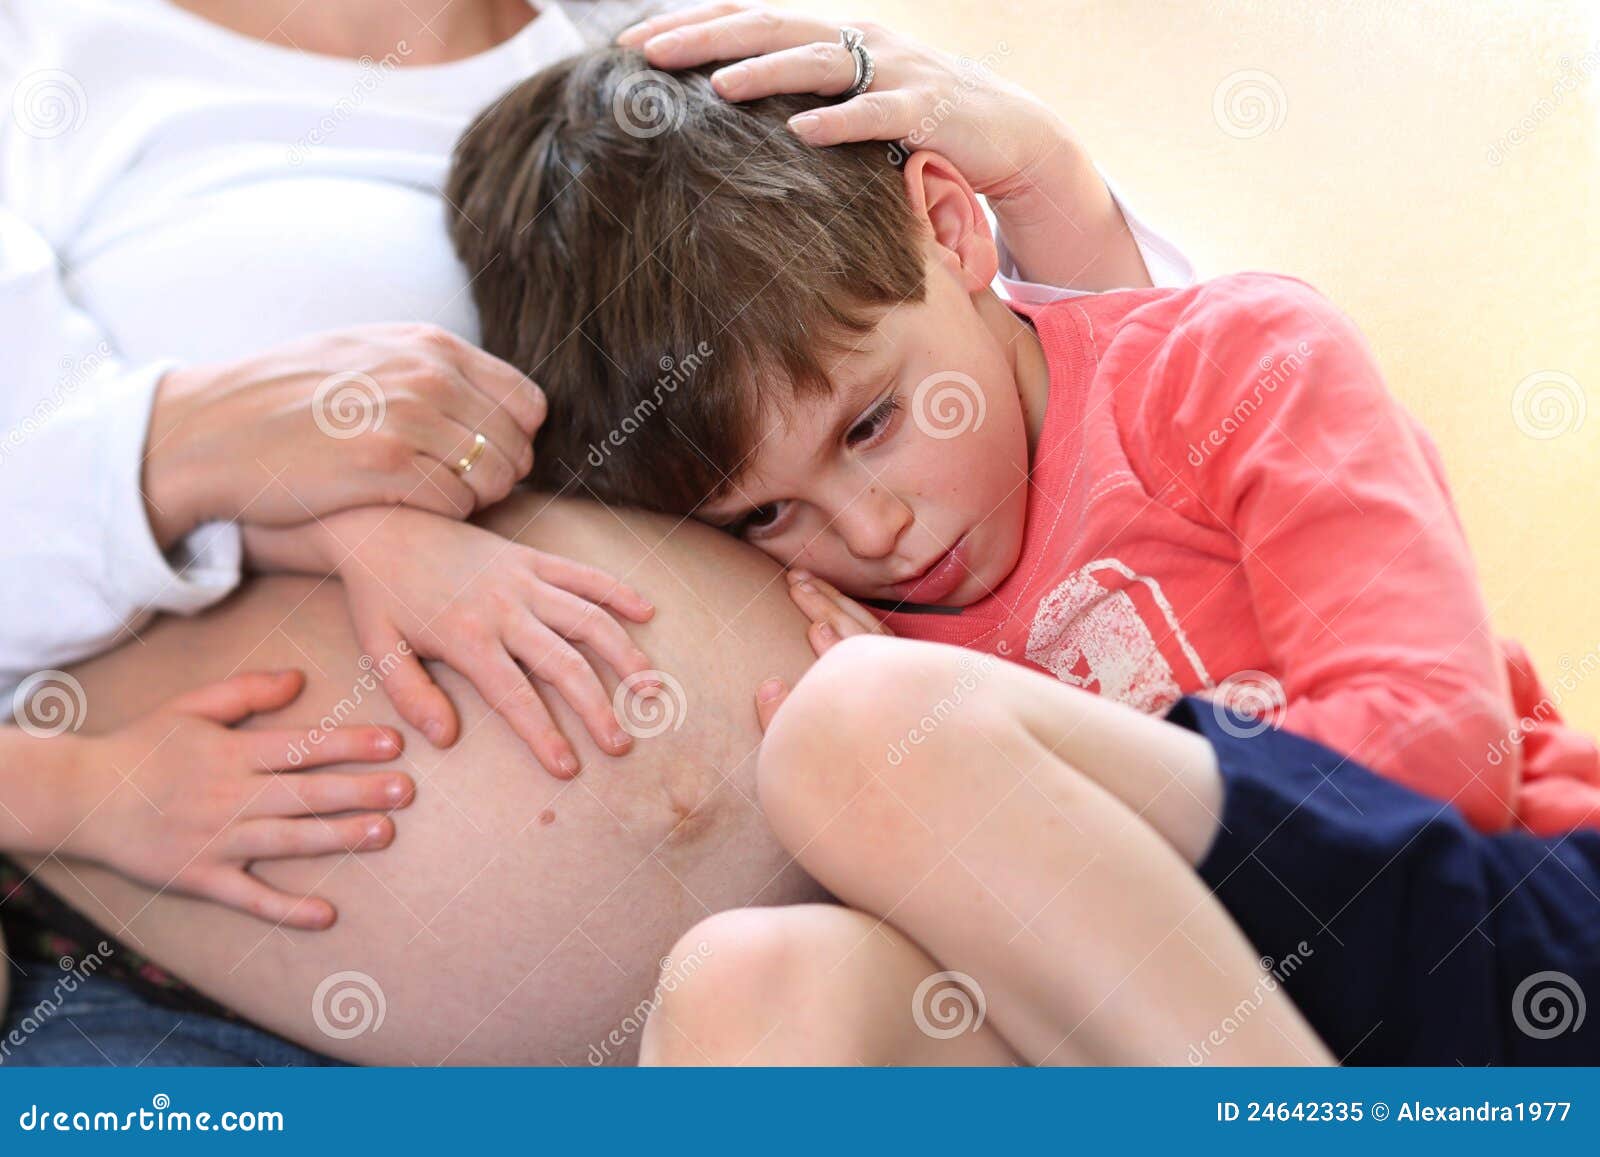 Потрогал киску мамы. Потрогать детский животик. Мальчик обнимать мальчика живот. Мальчик трогает живот мальчика.